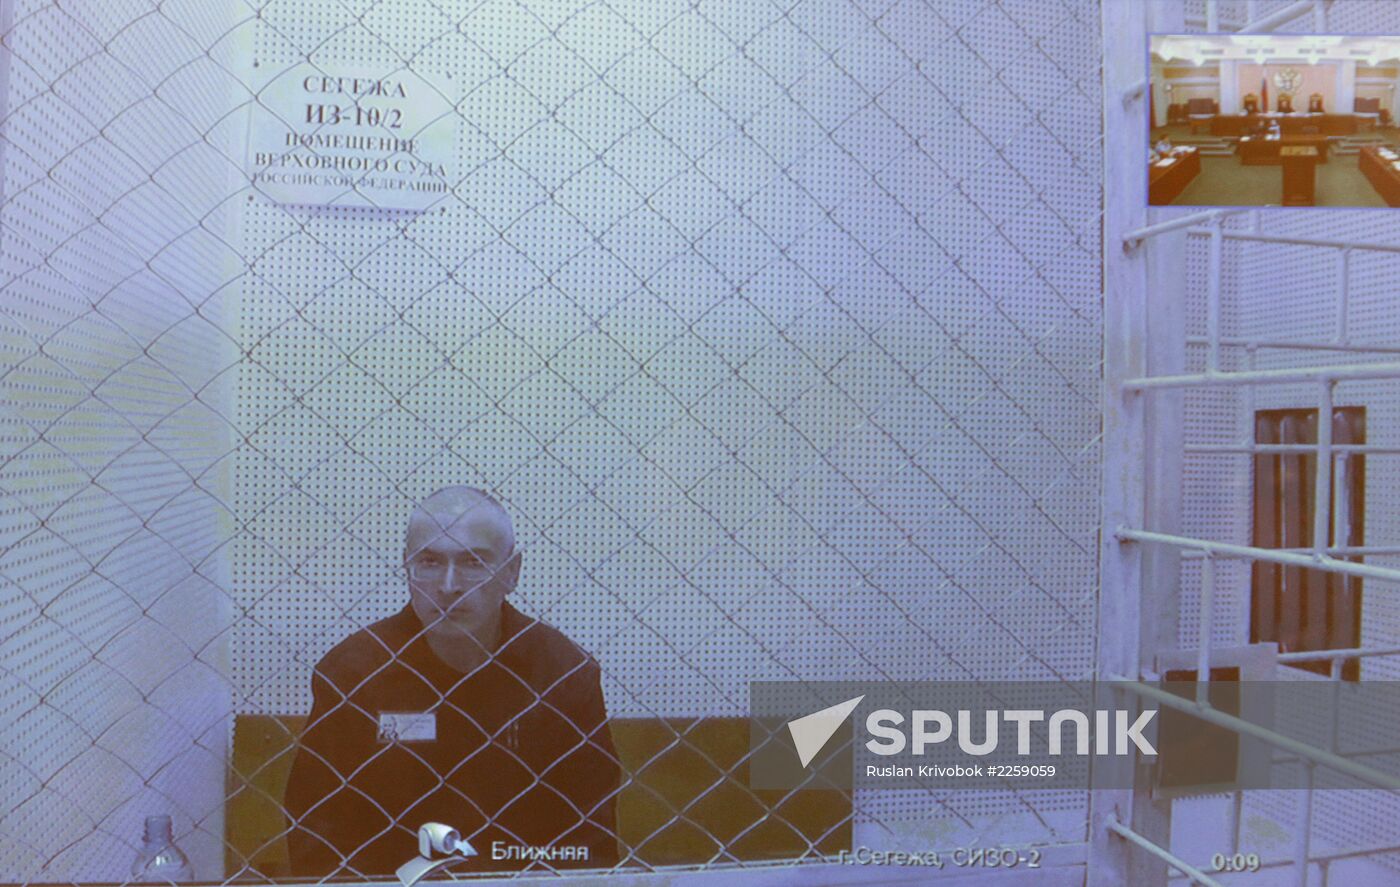 Court reviews appeal against Khodorkovsky, Lebedev's sentence